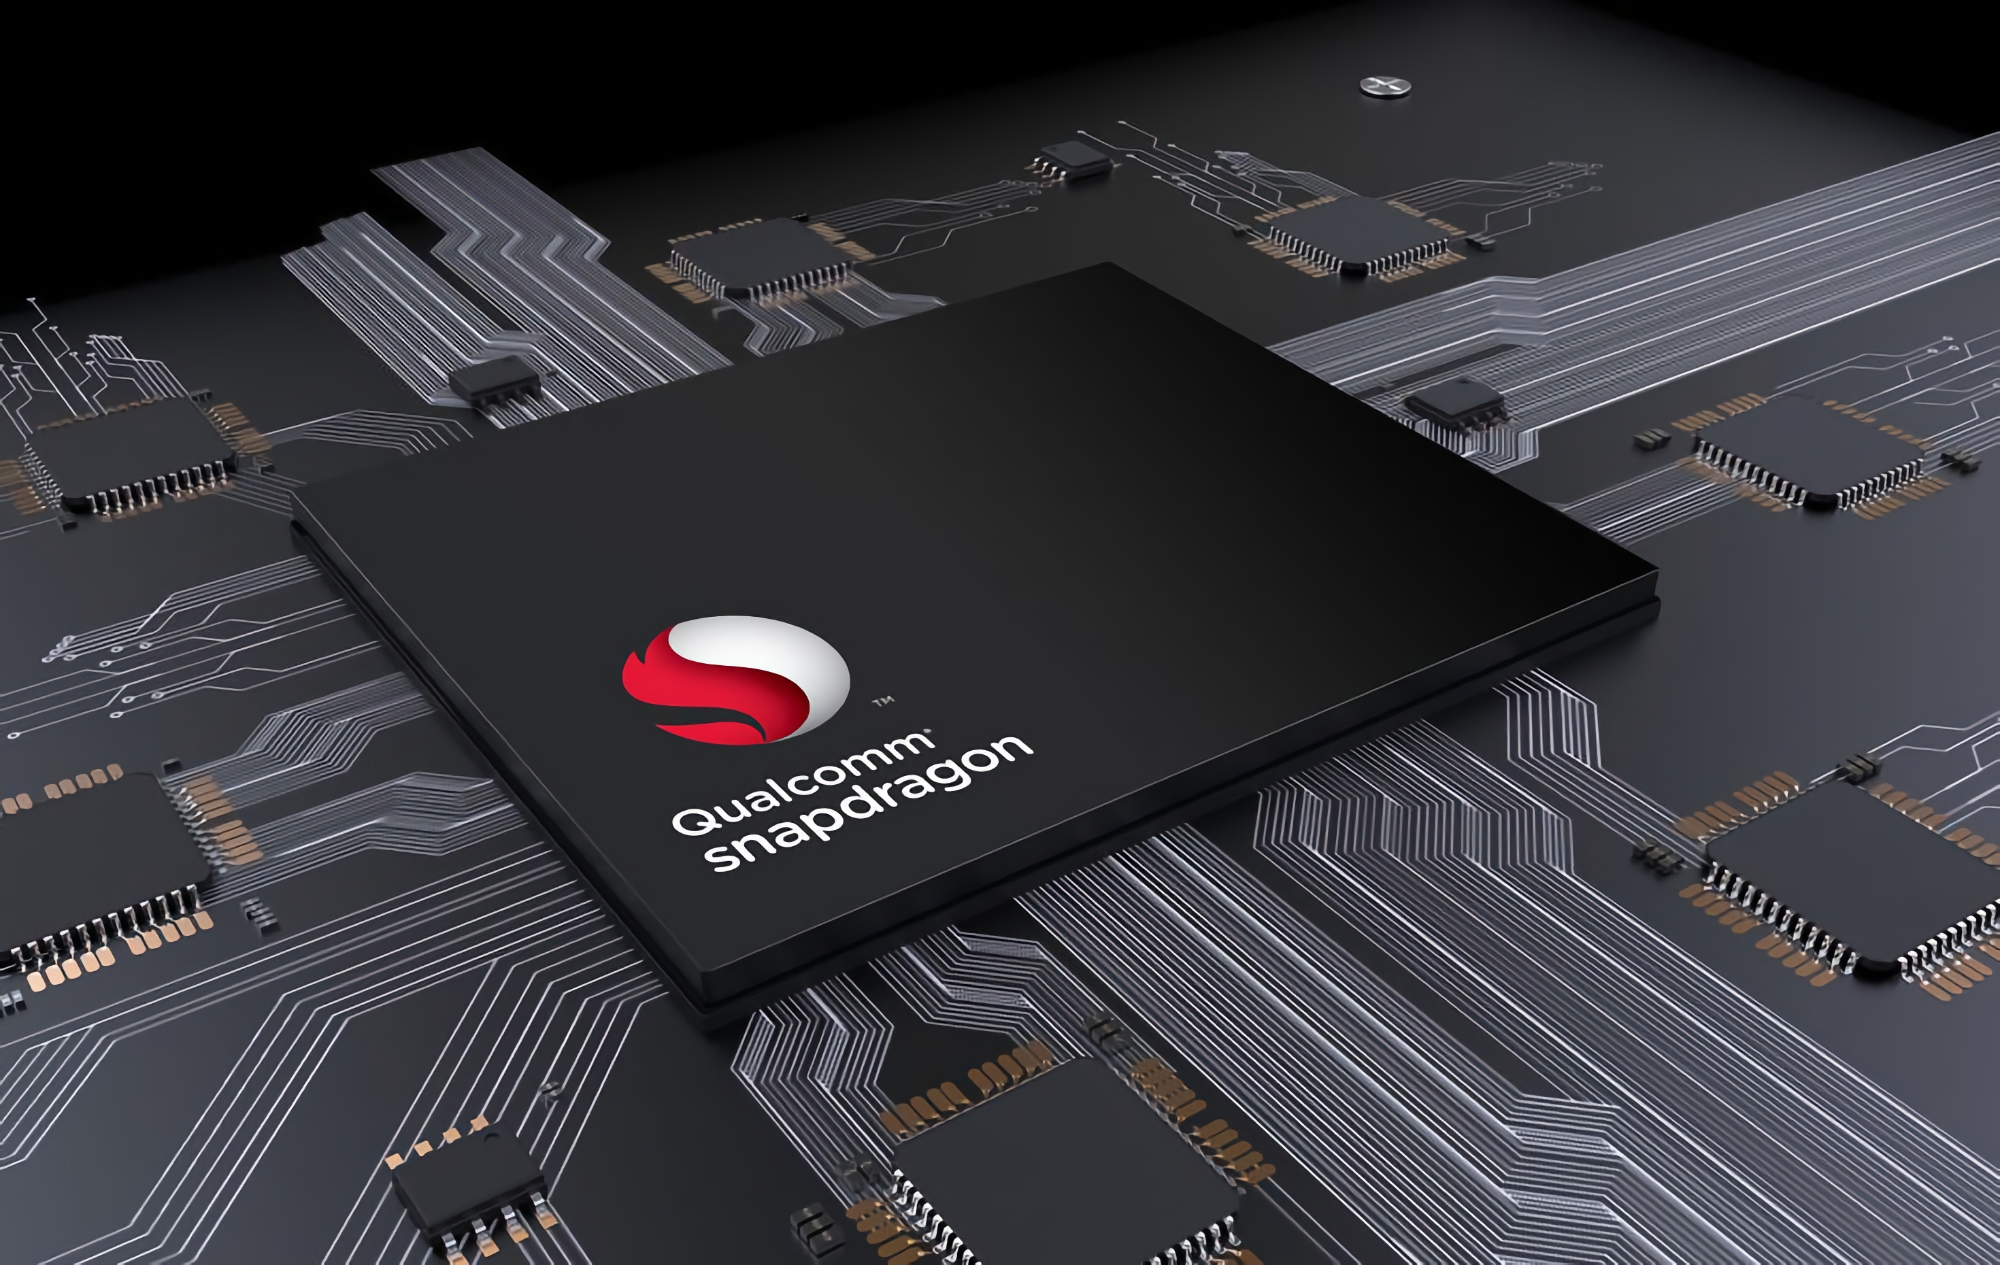 Quelle: Qualcomm wird den Namen des neuen Flaggschiff-Chips Snapdragon 898 in Snapdragon 8 gen1 ändern